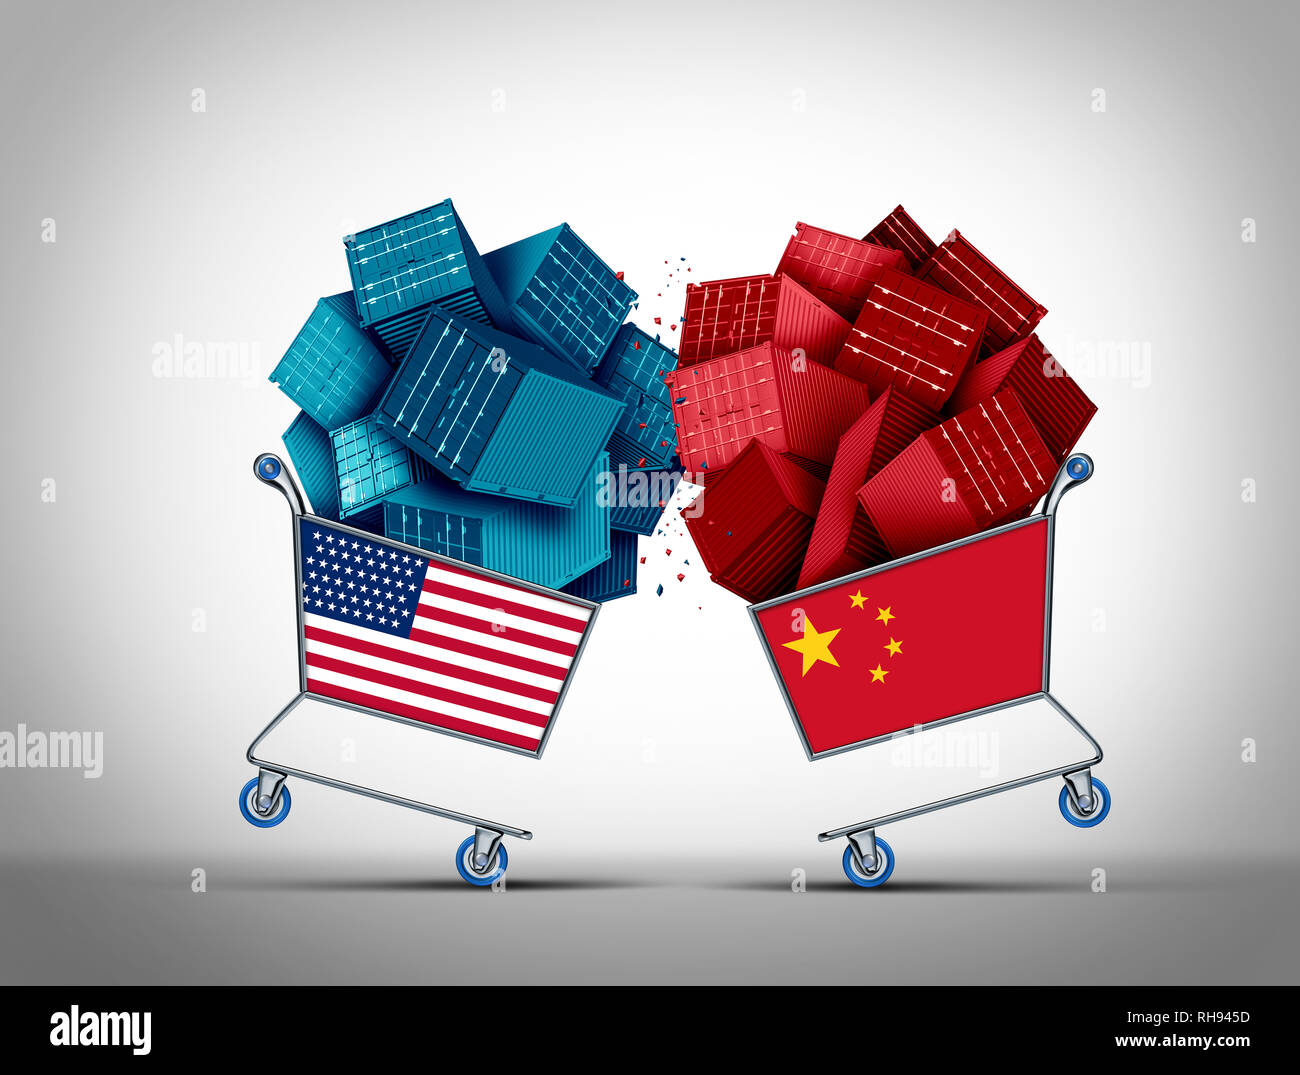 China American Trade kämpfen und USA wirtschaftliche Herausforderung oder Vereinigten Staaten chinesische Geschäft Verhandlungen Konflikt Konzept als wirtschaftliche Krieg und Tarif. Stockfoto